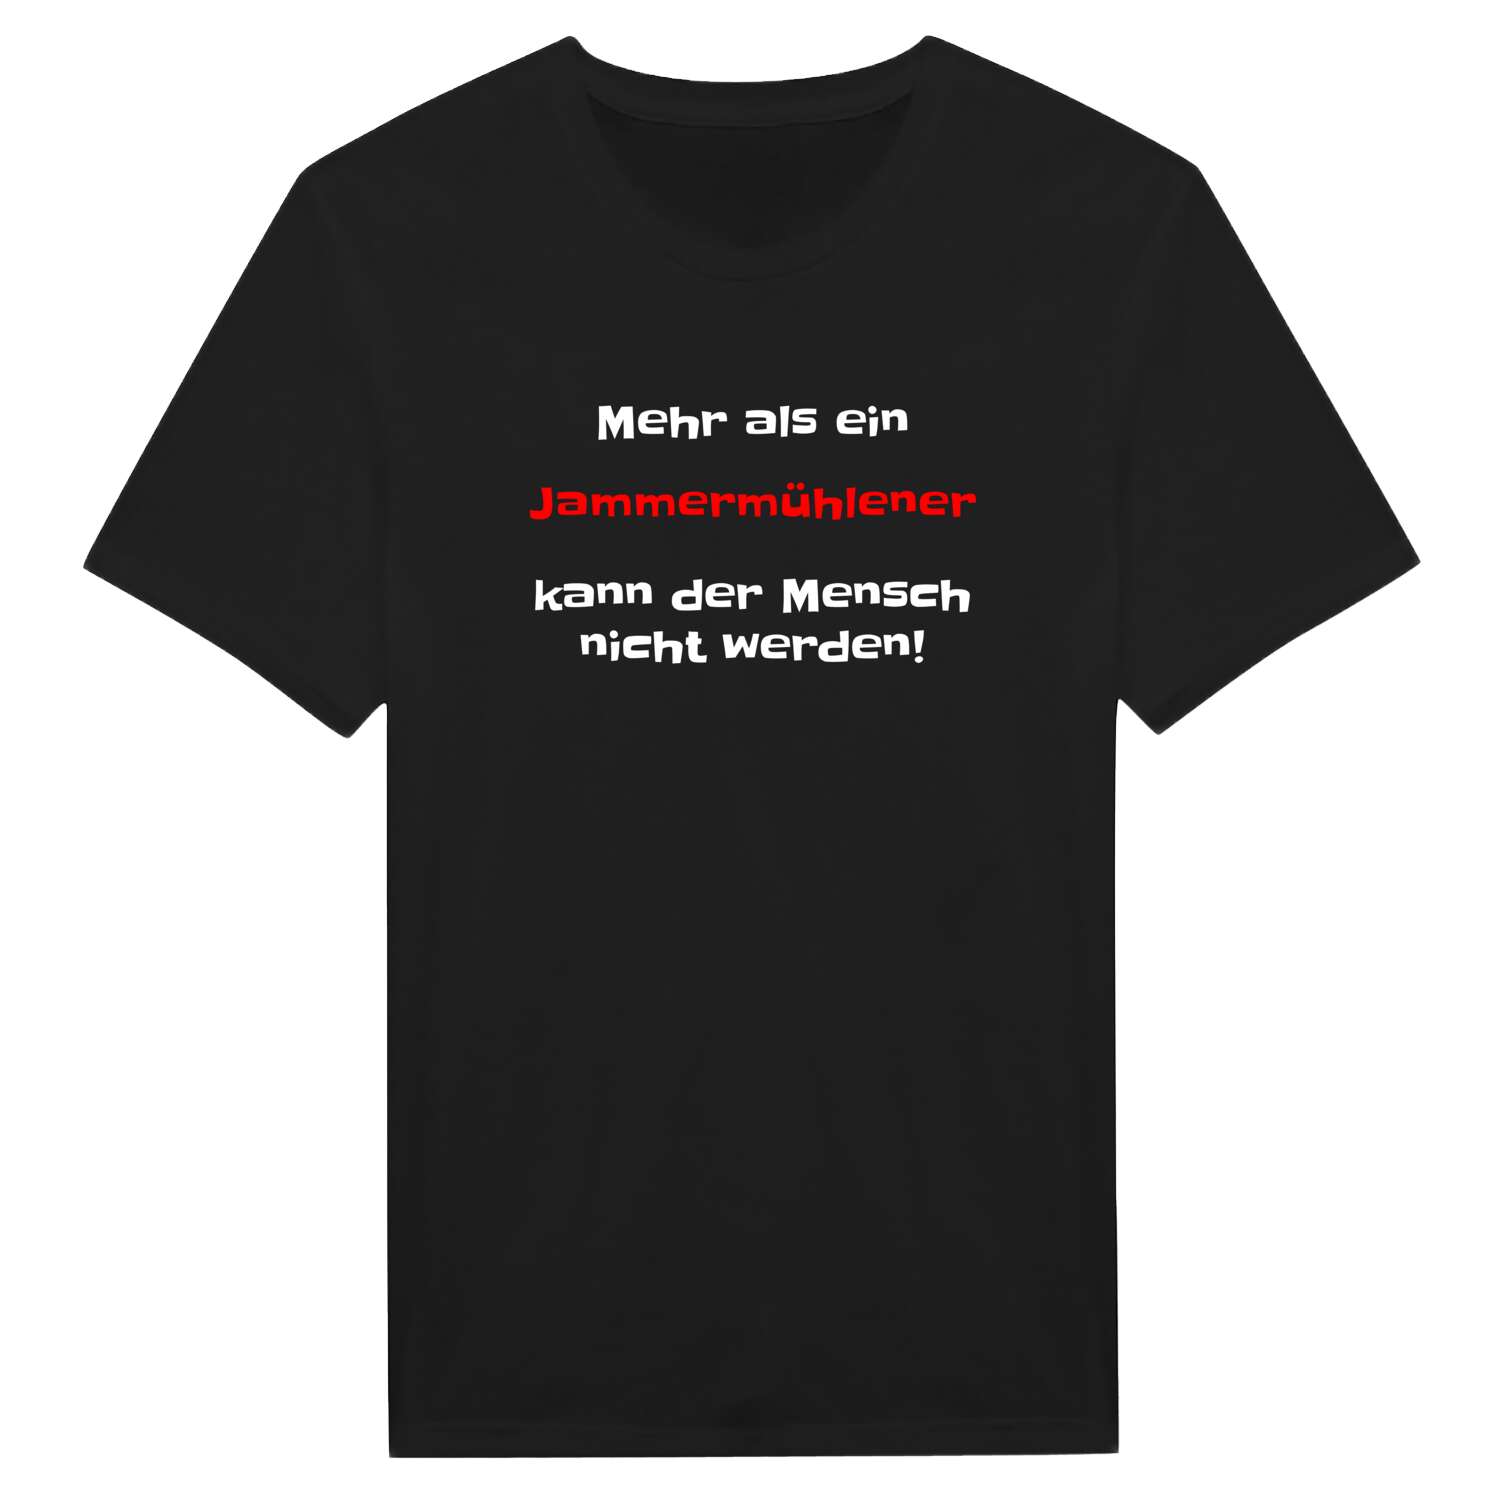 Jammermühle T-Shirt »Mehr als ein«